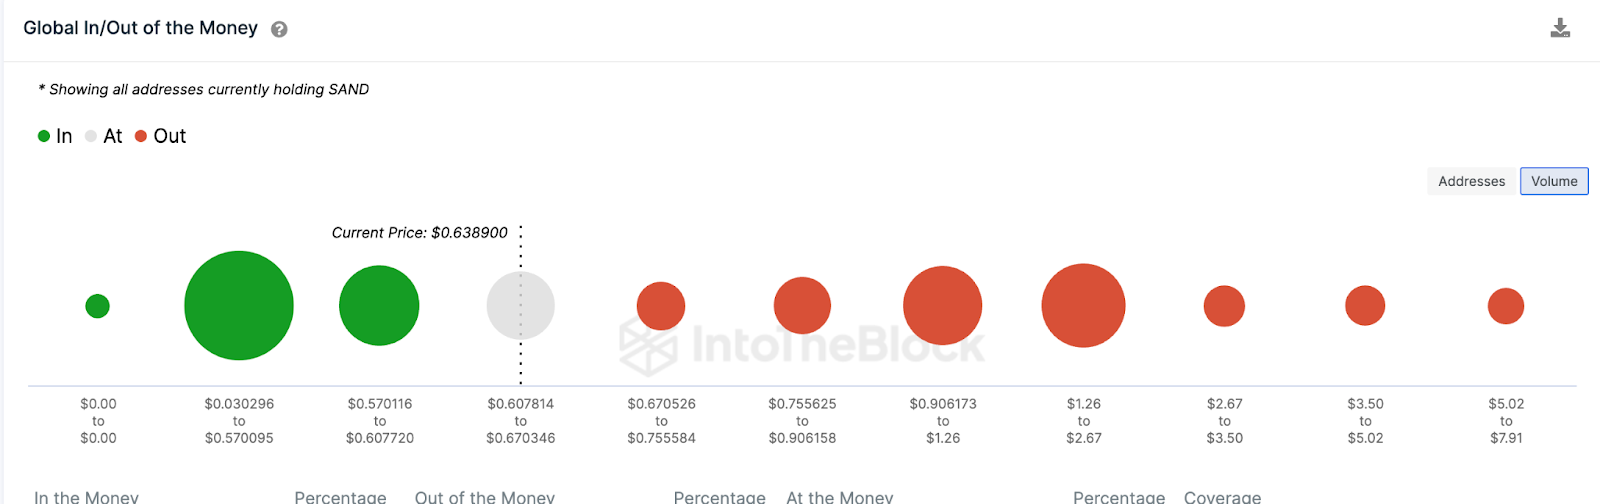 Sandbox (SAND) Datos globales de entrada/salida de dinero.  Abril de 2023, Fuente: IntoTheBlock. 